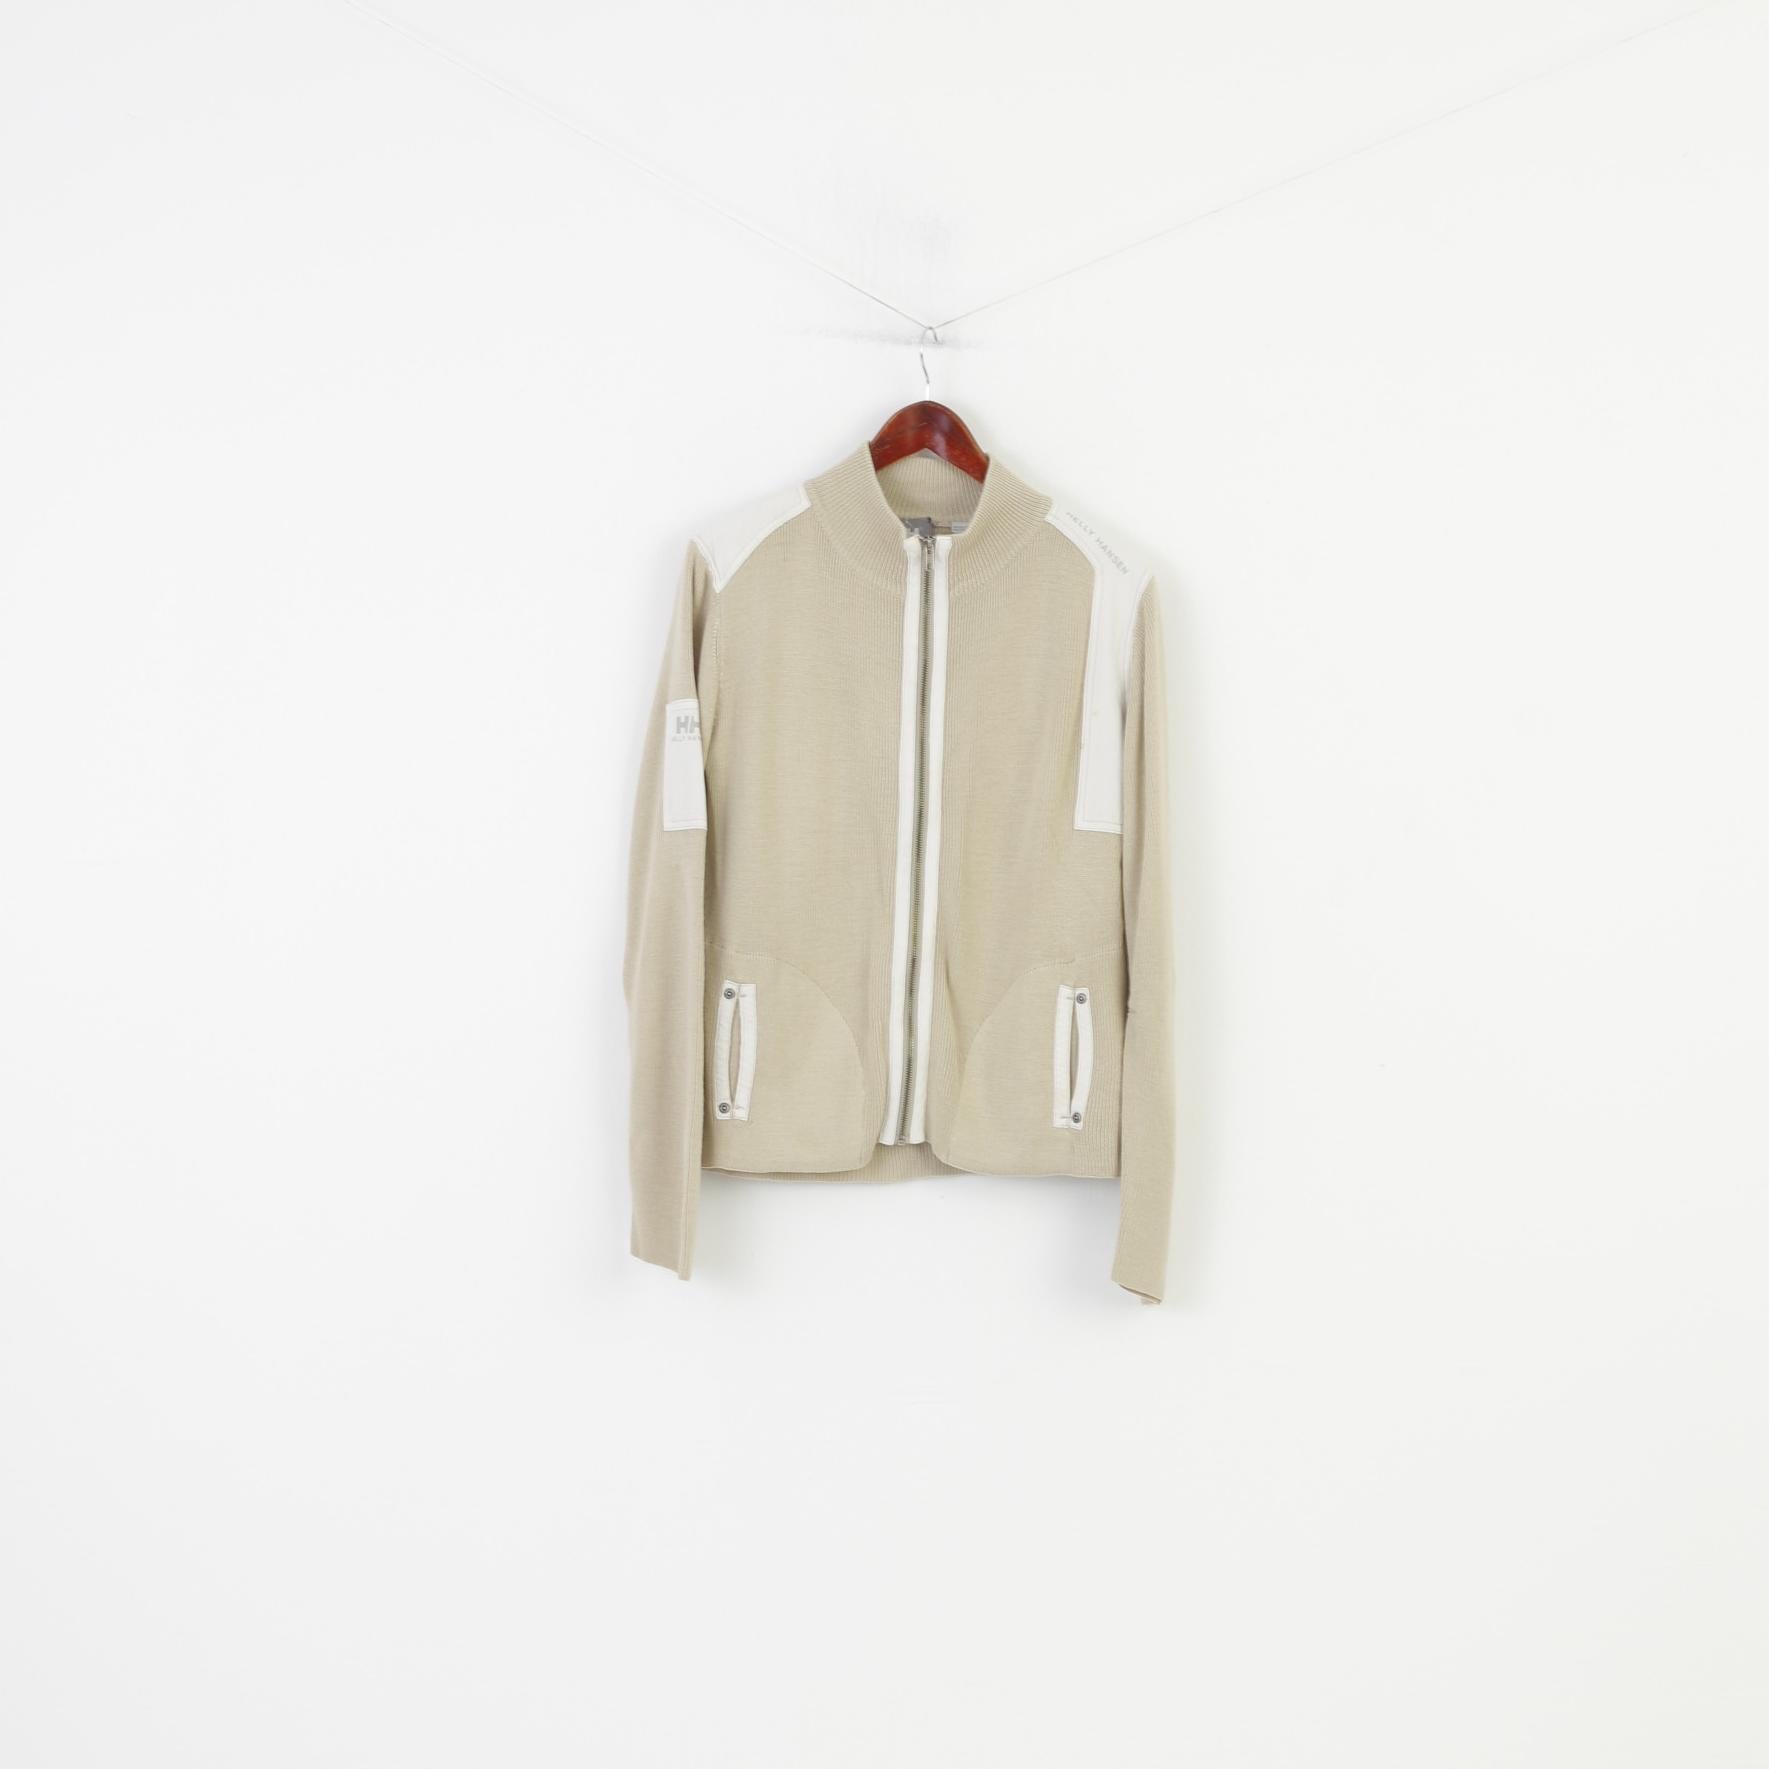 Helly Hansen Men M Sweatshirt Full Zipper Beige Acrylic Collar Vintage Top